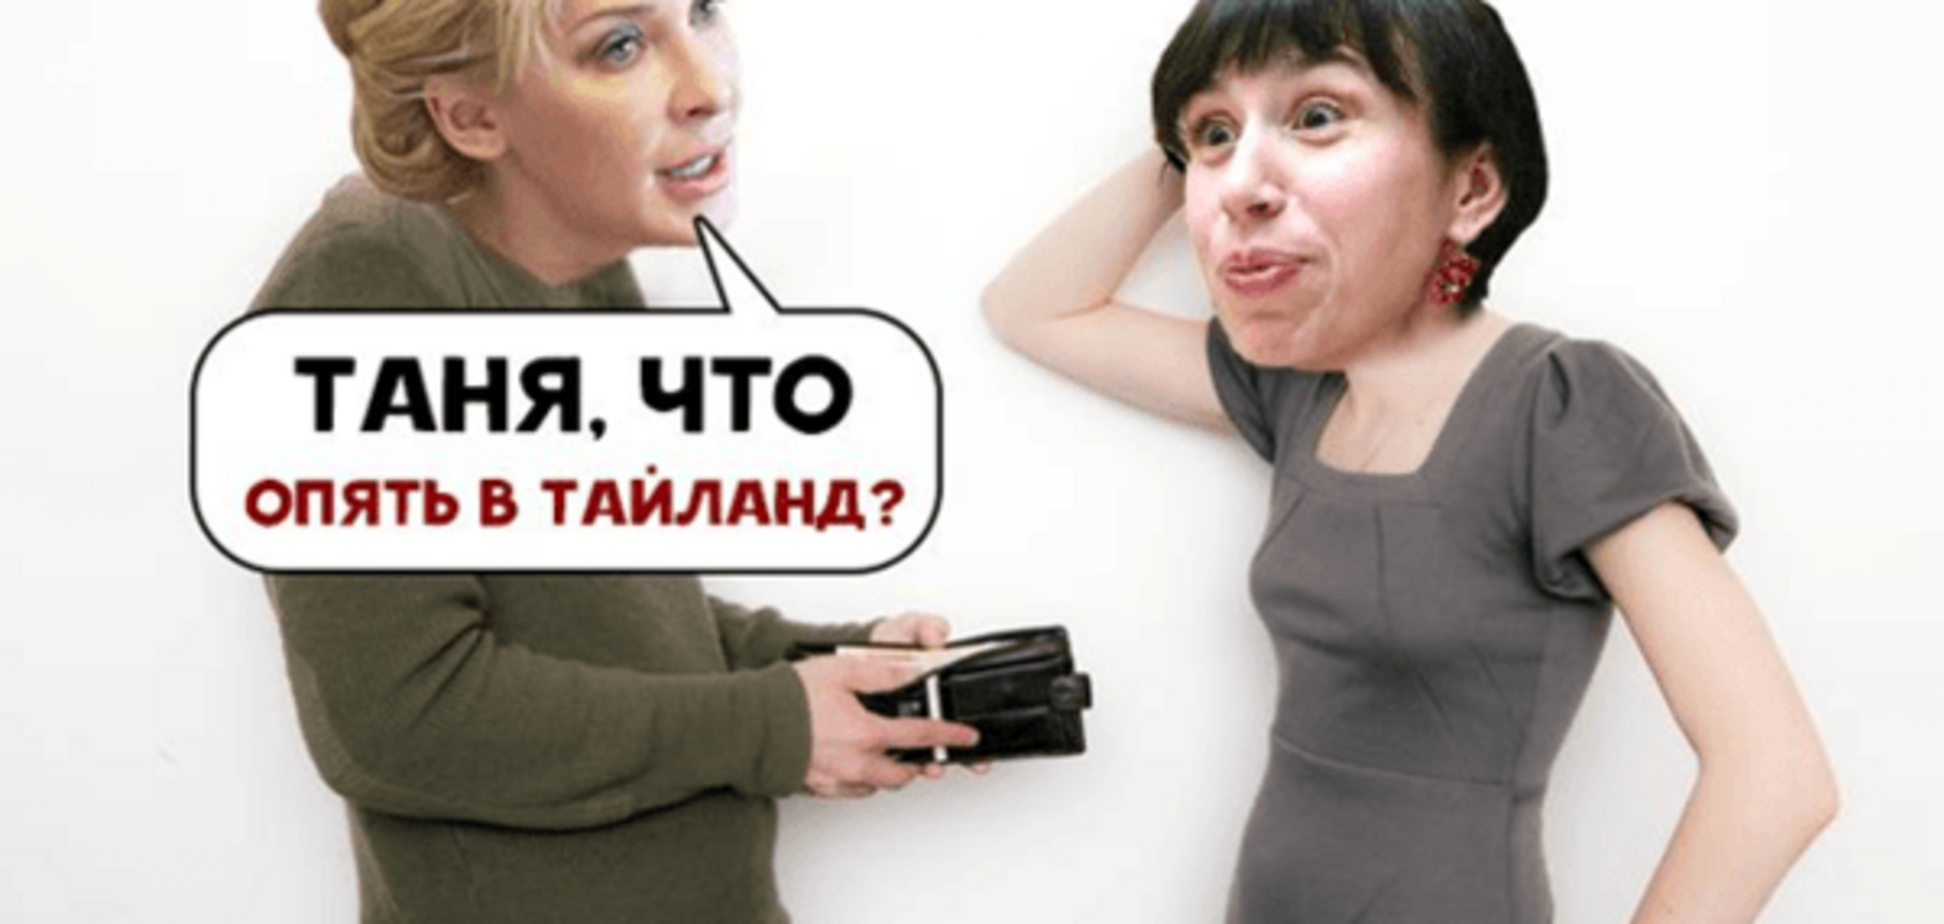 Татьяна Черновол - борец с коррупцией и начинающая коррупционерка